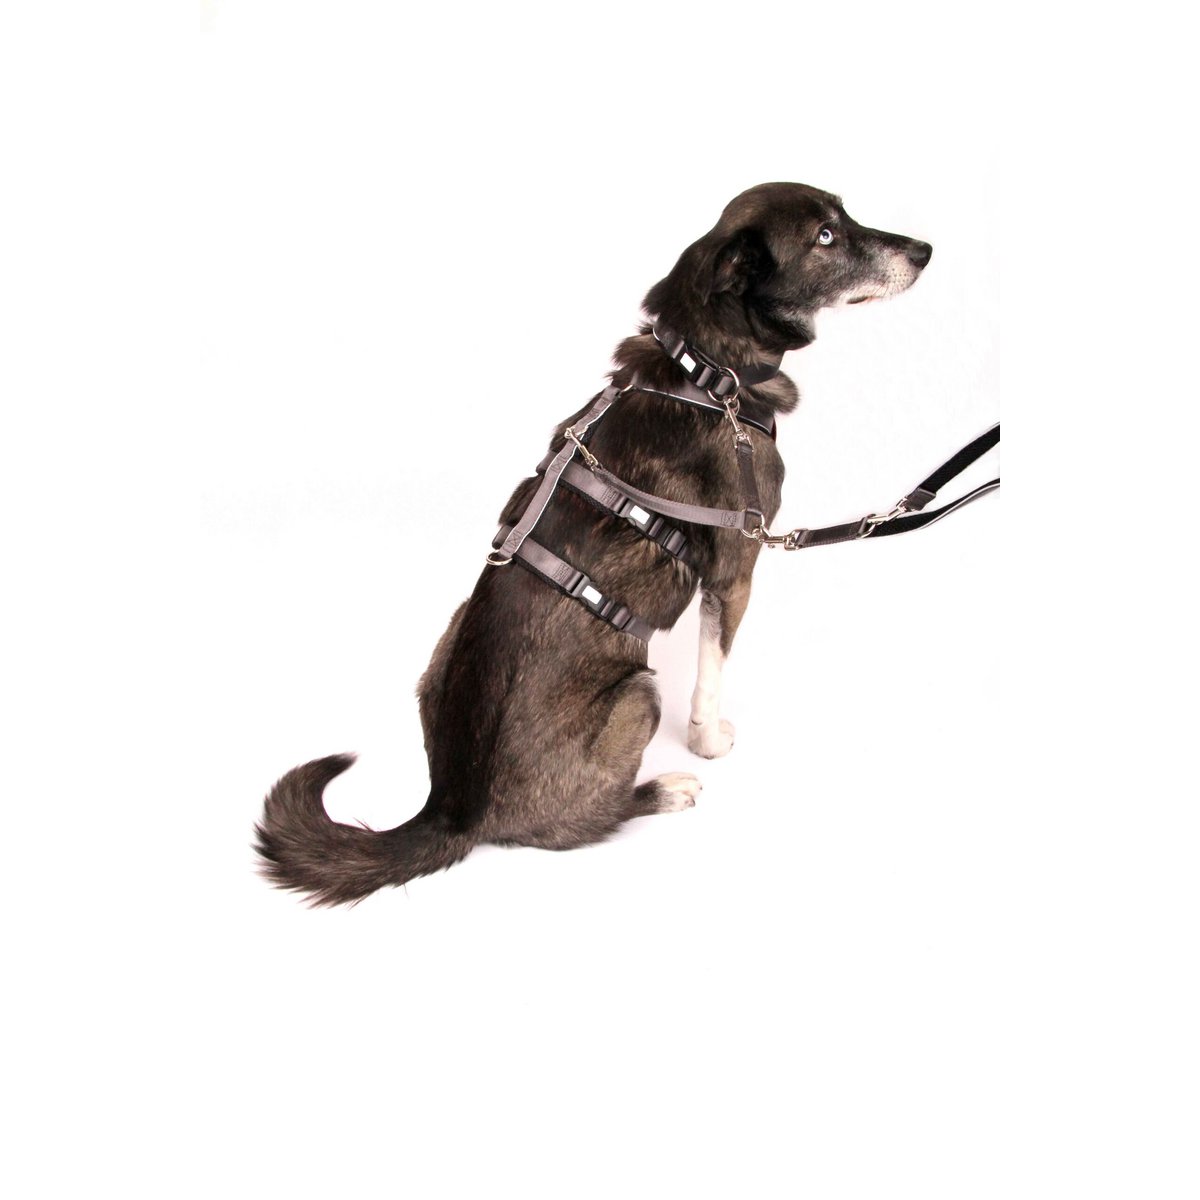 Dog leash Silver-Black-Edition, M